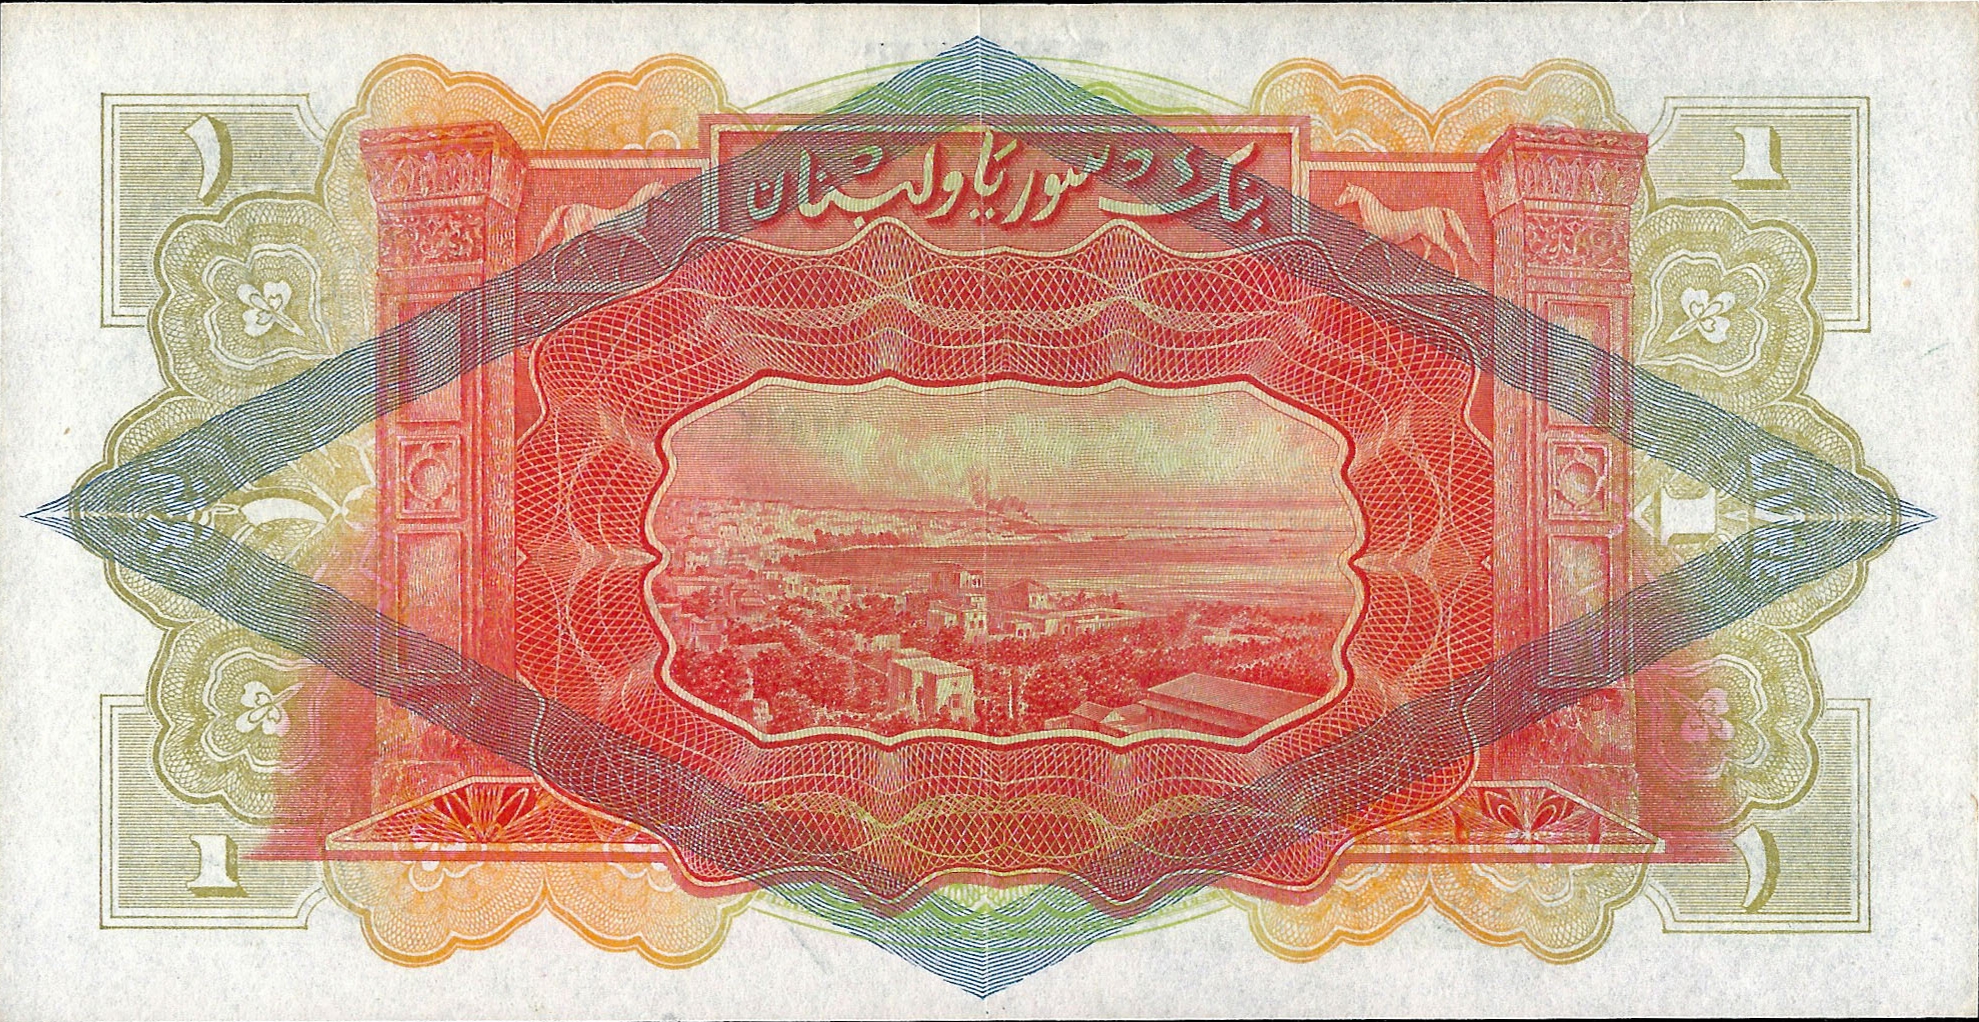 التاريخ السوري المعاصر - النقود والعملات الورقية السورية 1939 – ليرة سورية واحدة (E)